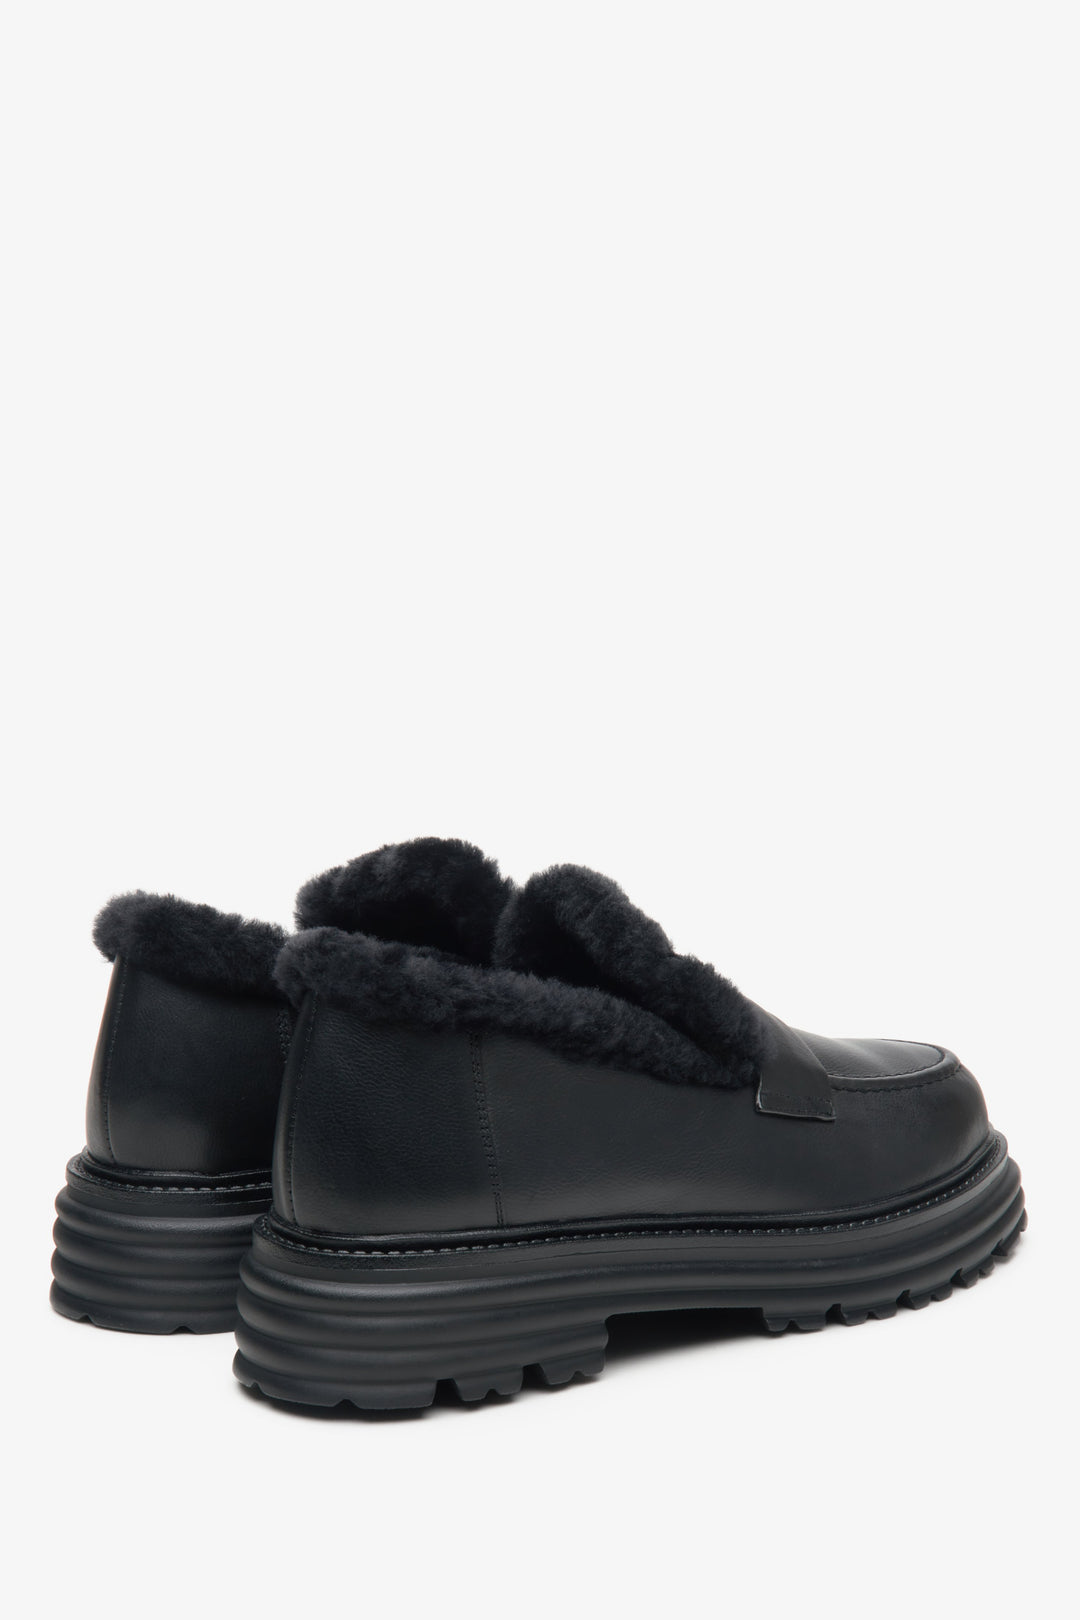 Damskie skórzane mokasyny Estro w kolorze czarnym z ociepleniem - zbliżenie na zapiętek i linię boczną butów.